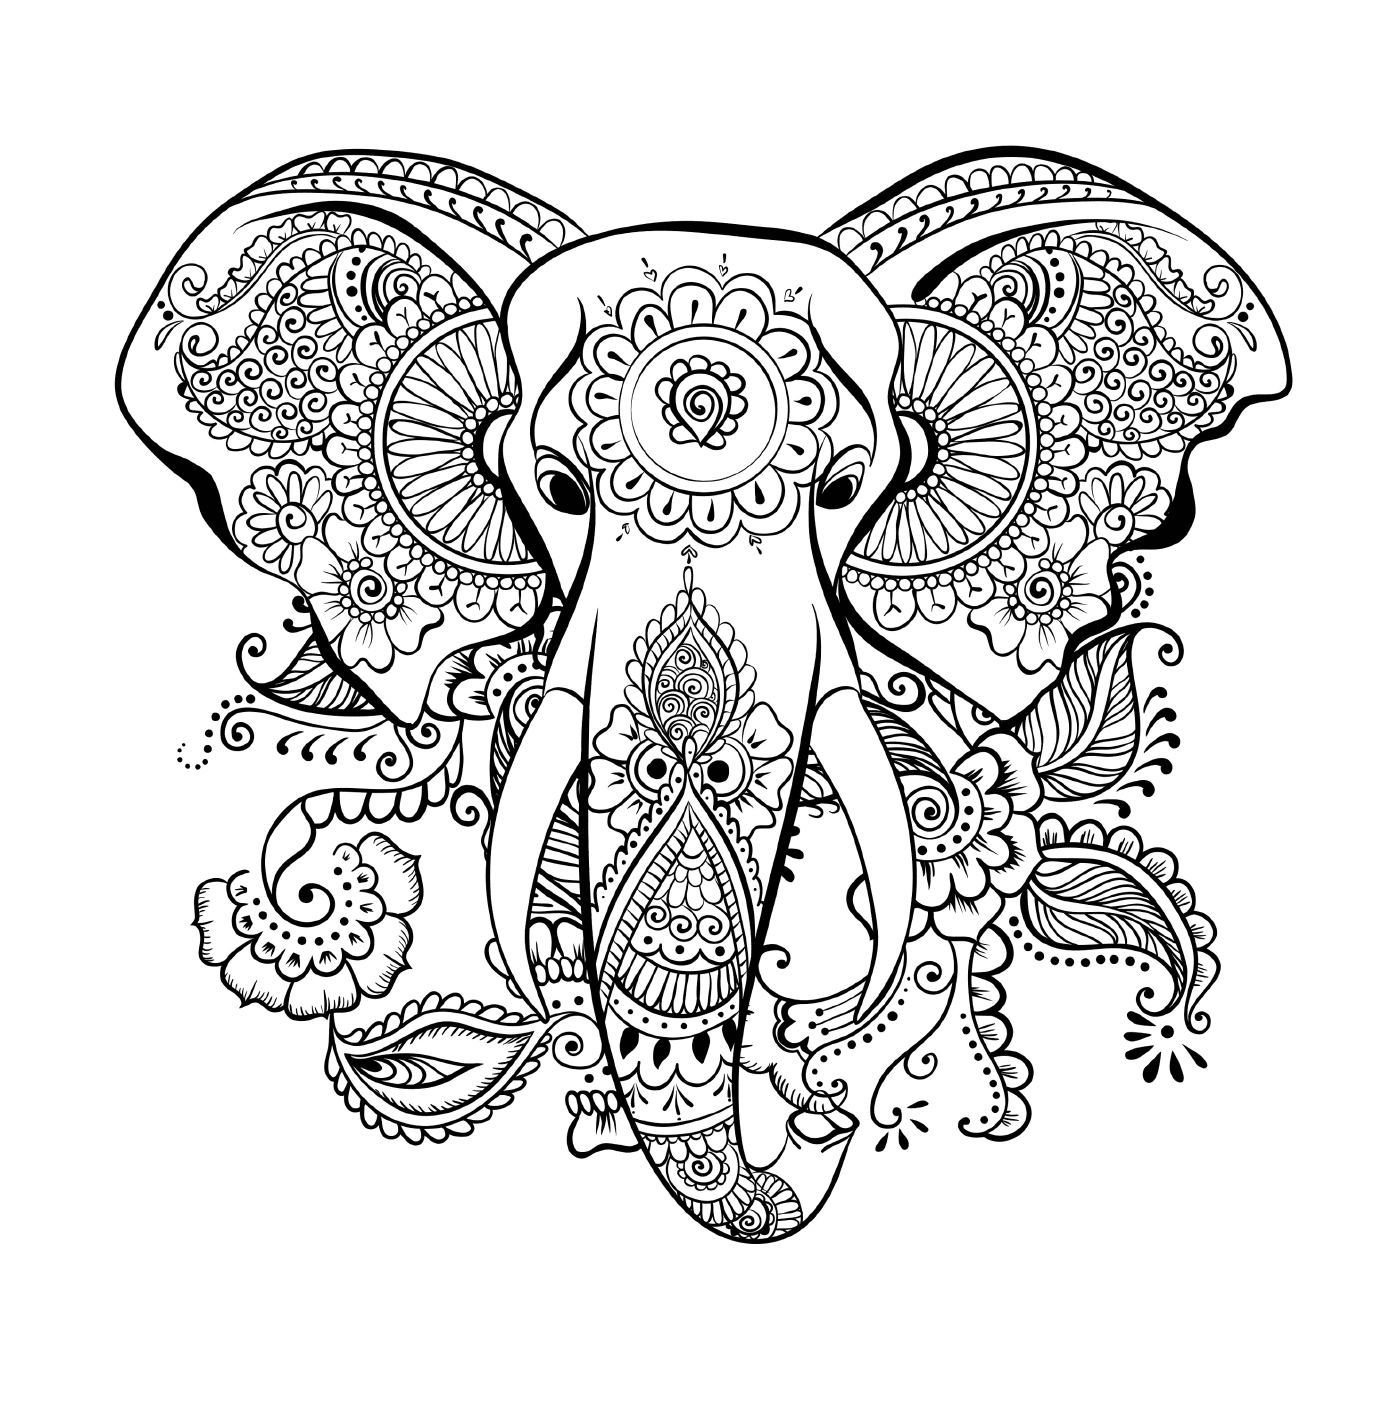  Слон с цветочным рисунком на голове 